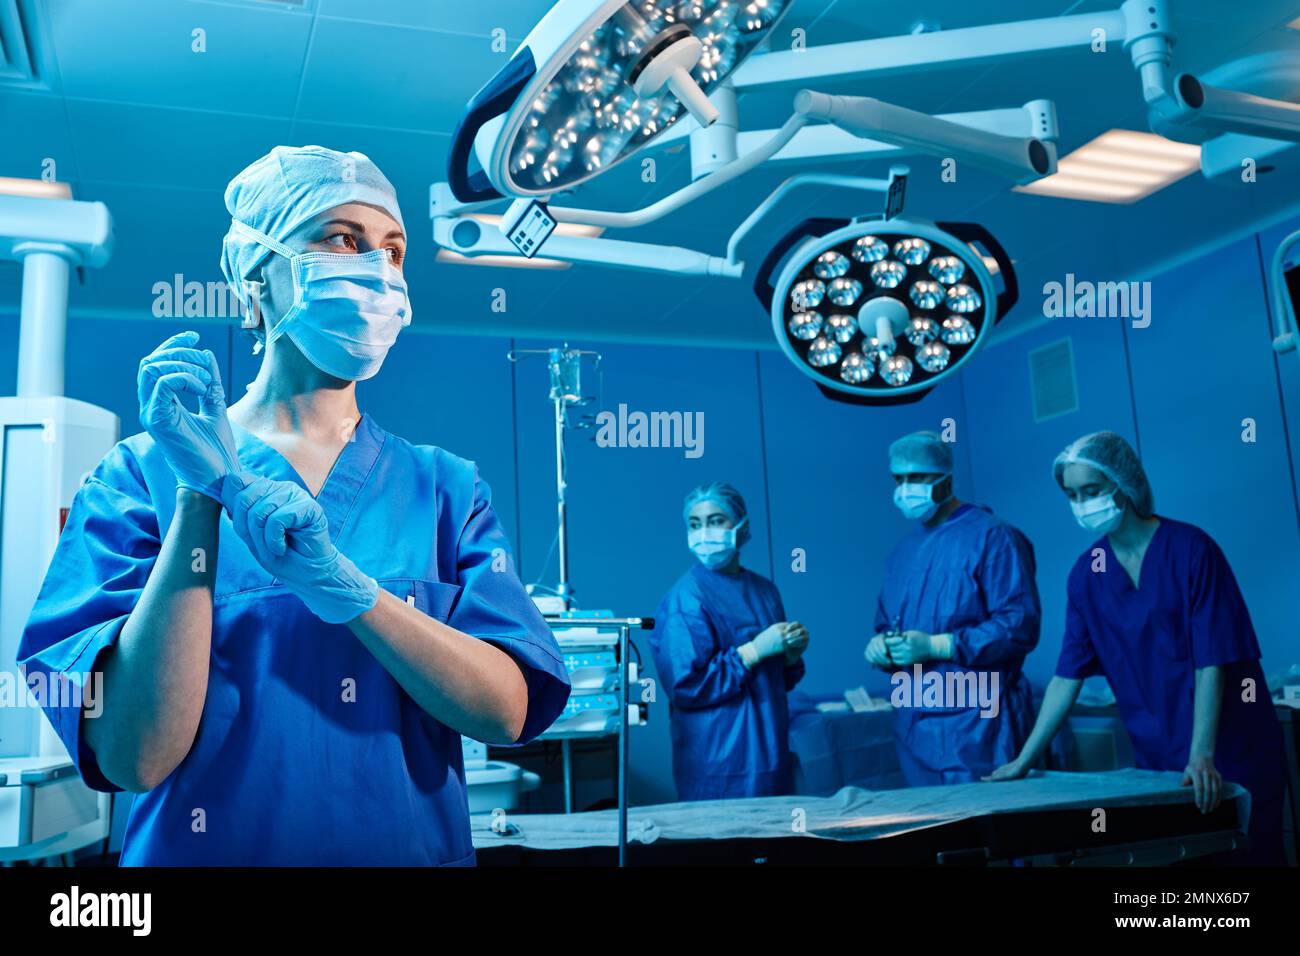 Infermiere della sala operatoria che indossa guanti protettivi prima dell'intervento chirurgico in piedi in una sala operatoria moderna con personale medico Foto Stock